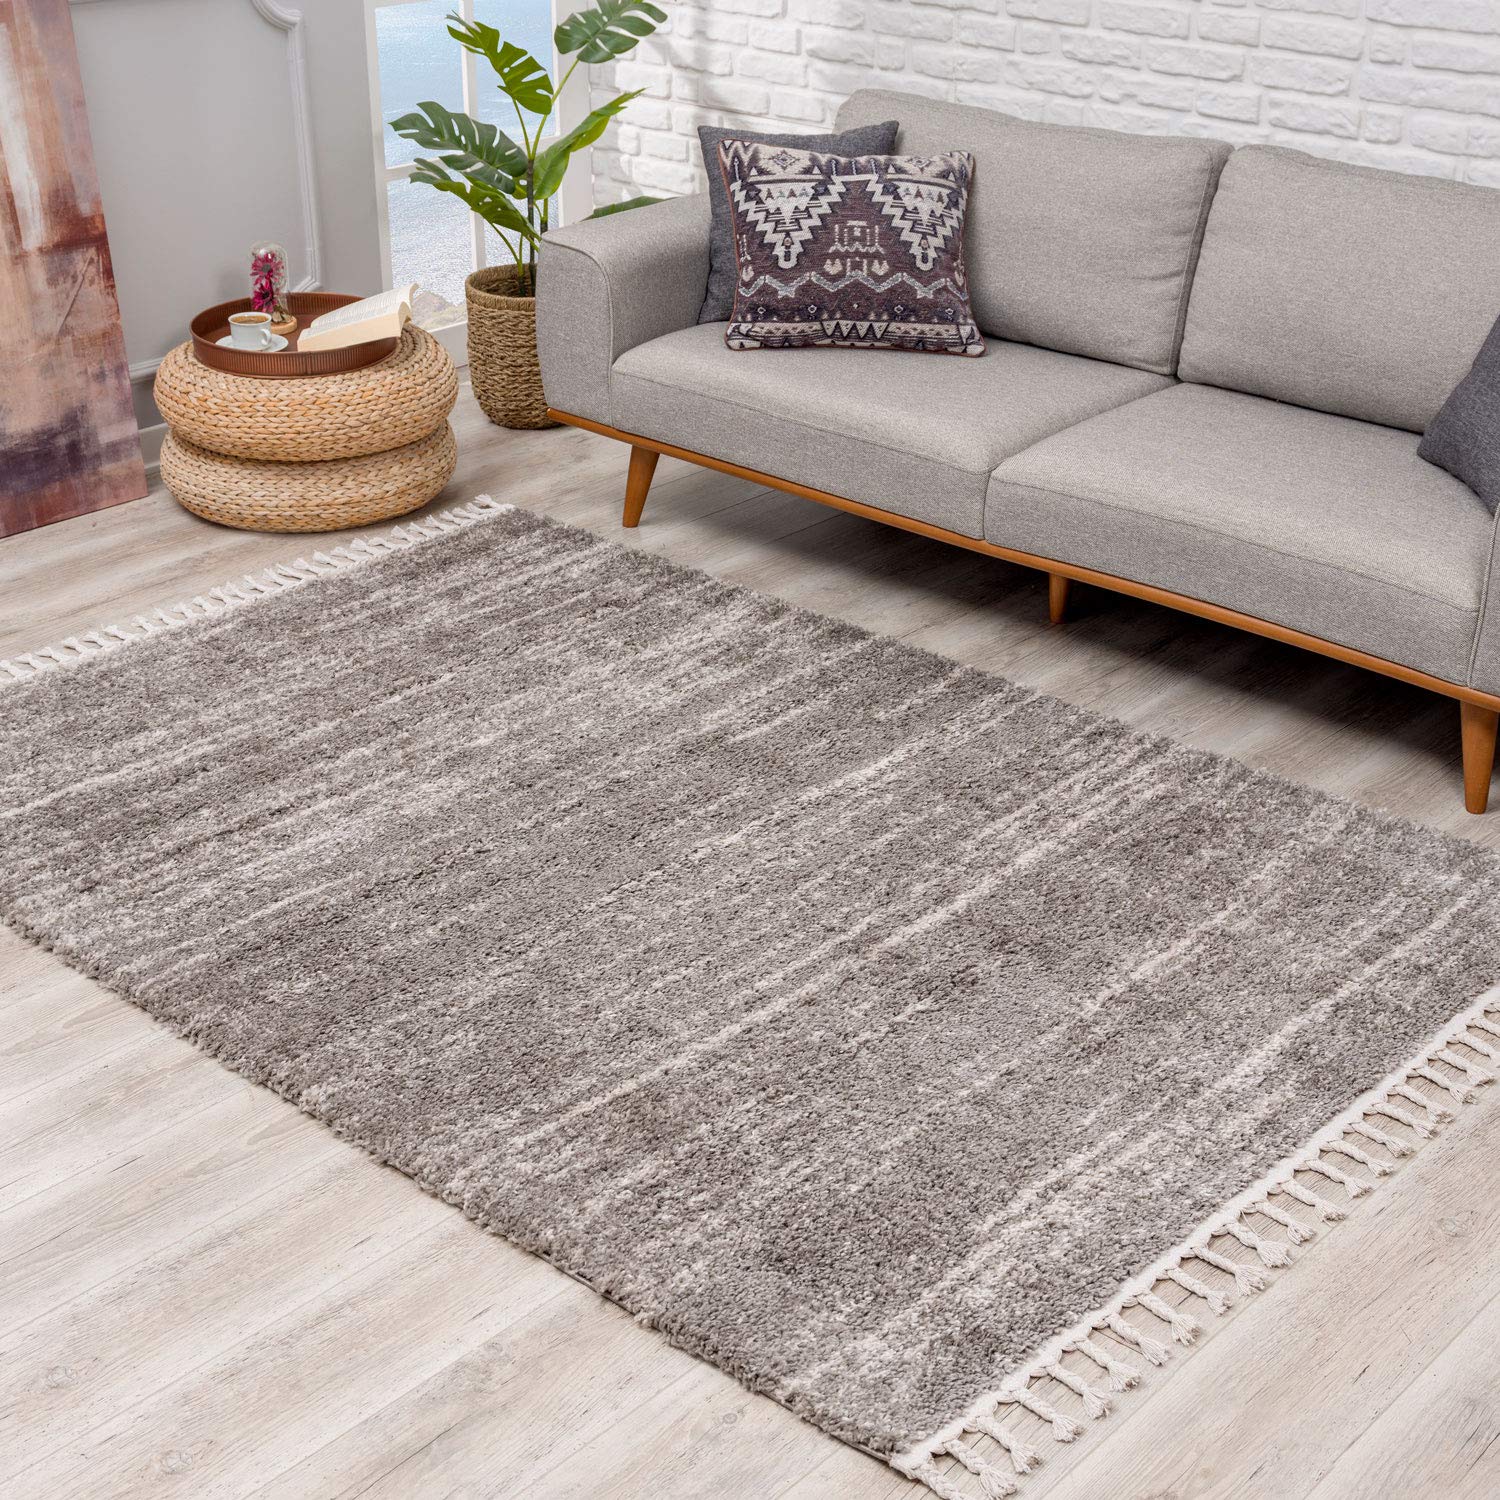 Teppich Hochflor Wohnzimmer - Ethno Stil Meliert 200x290 cm Grau Creme - Teppiche mit Fransen